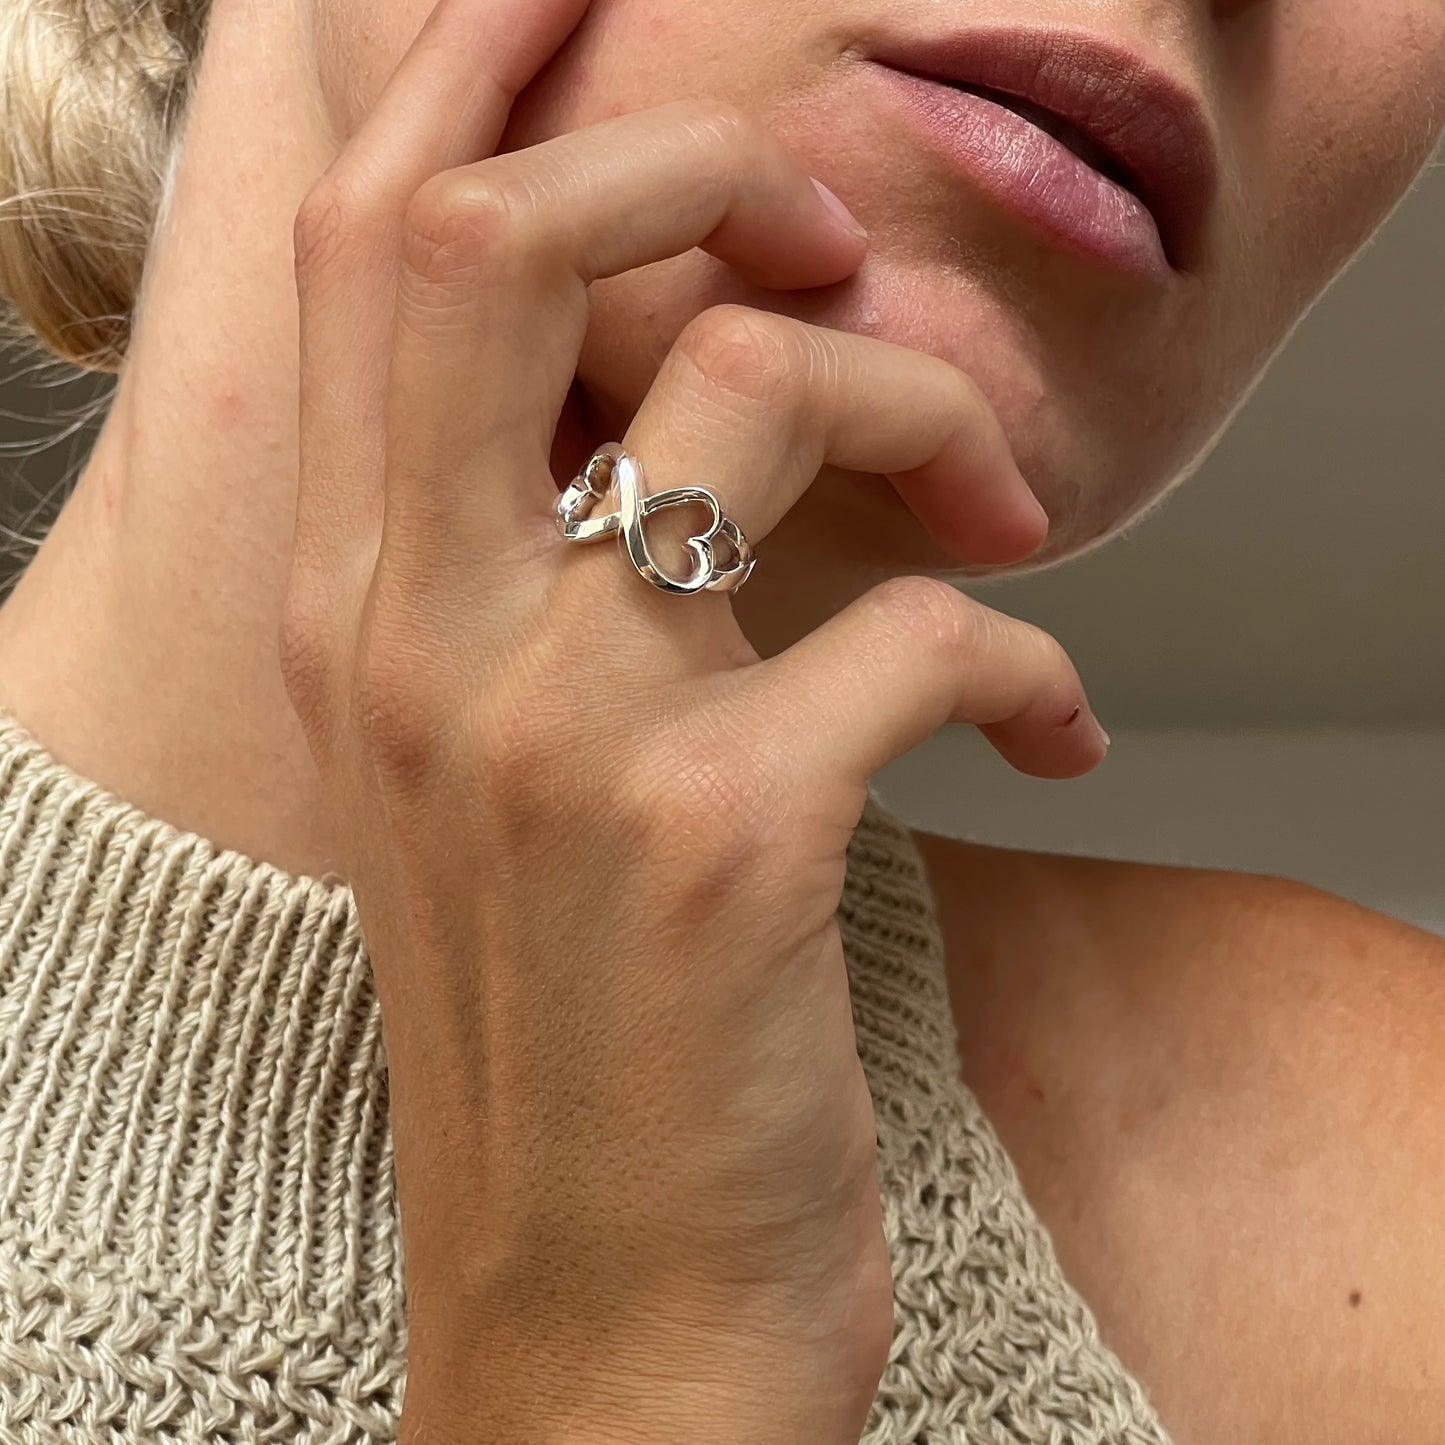 Tiffany & Co Double Loving Heart ring